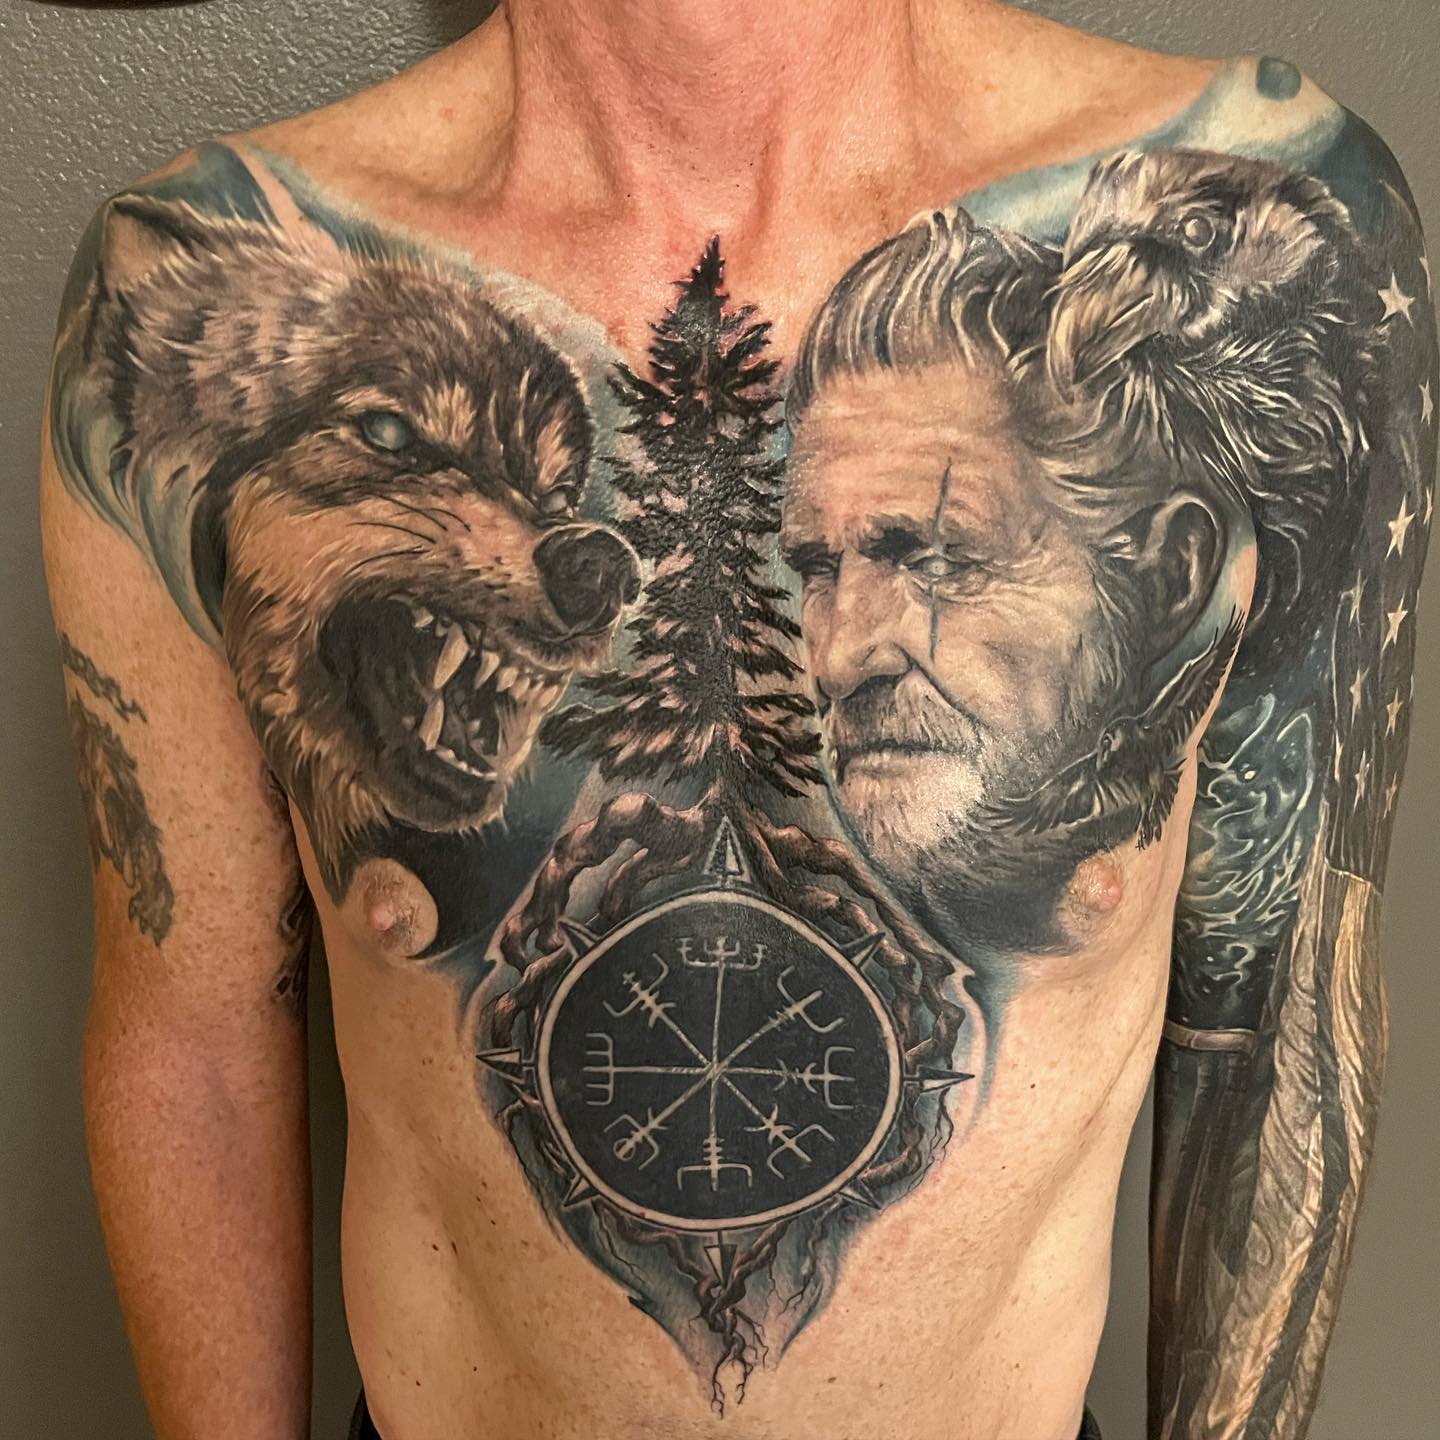 Nordic Raven wilk i tatuaż wojownika